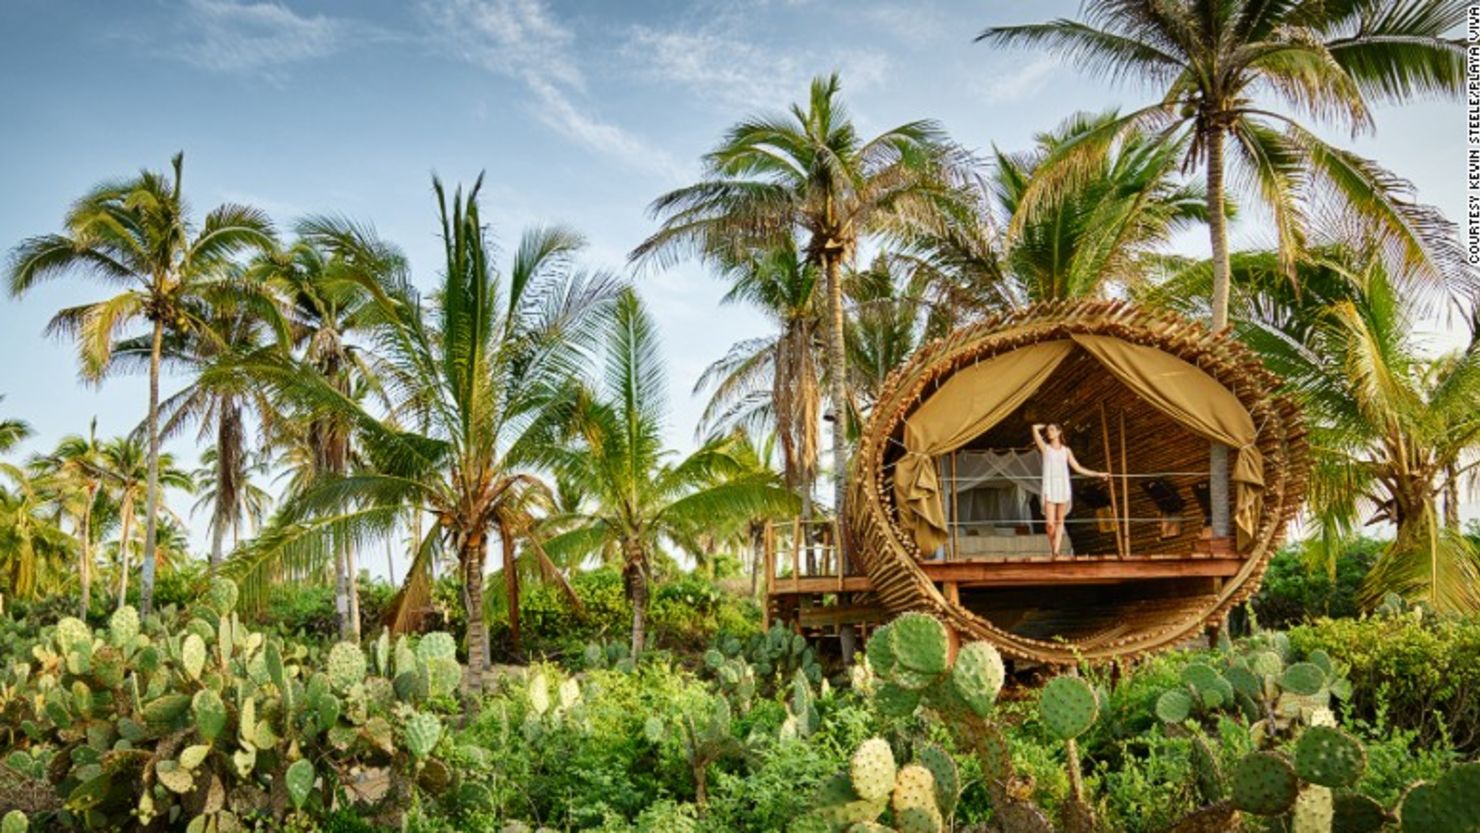 Las casas en los árboles más modernas combinan hoy la sostenibilidad y el lujo. Esta casa en el árbol cilíndrica está en Playa Viva, en Juluchuca (México) y está hecha de bambú sostenible.